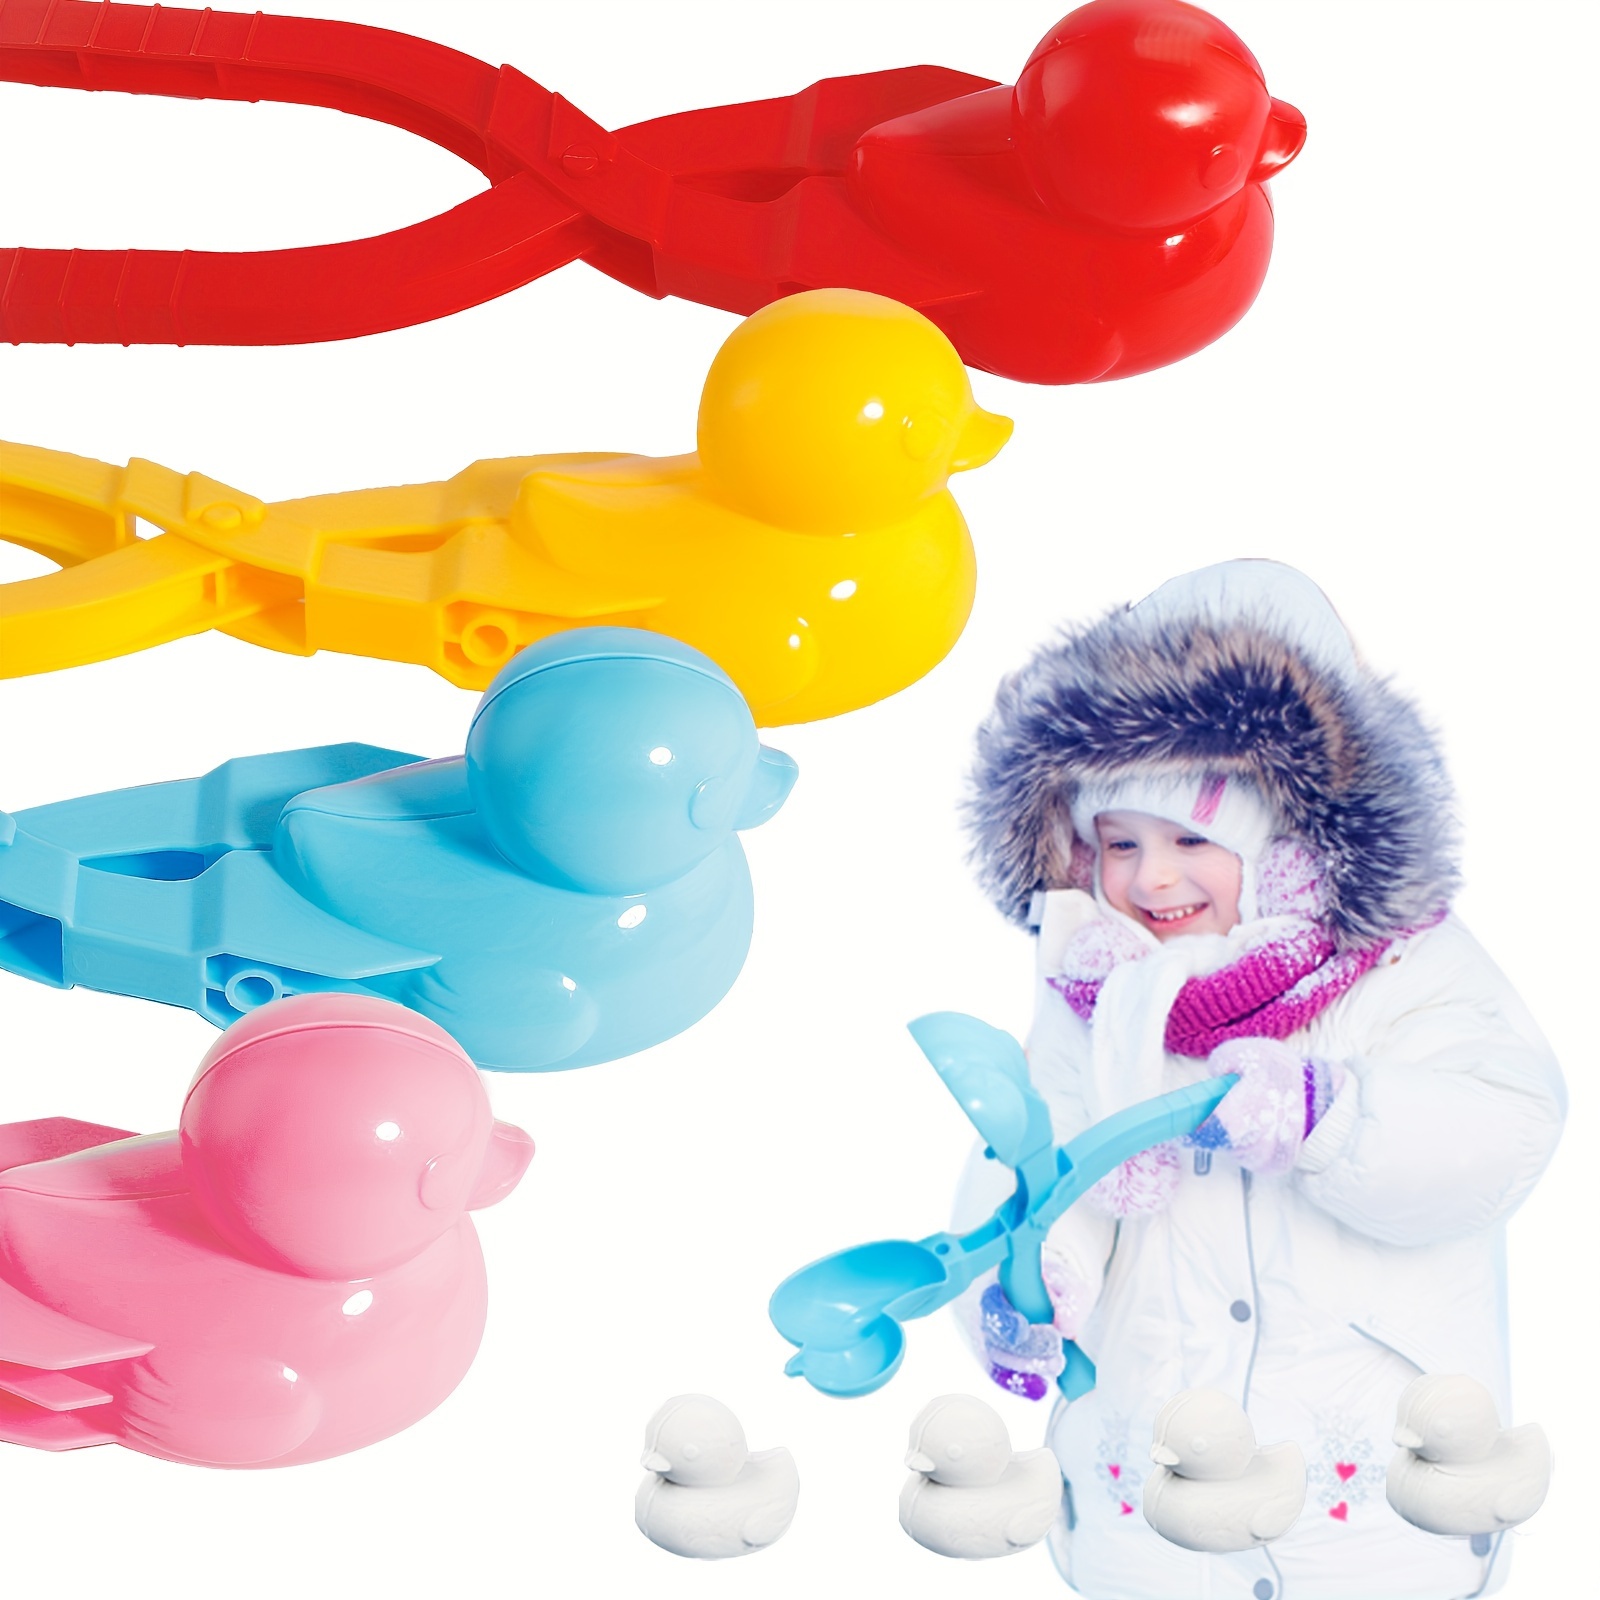 Outdoor Snow Toys Kids, Duck Shape Snow Ball Maker